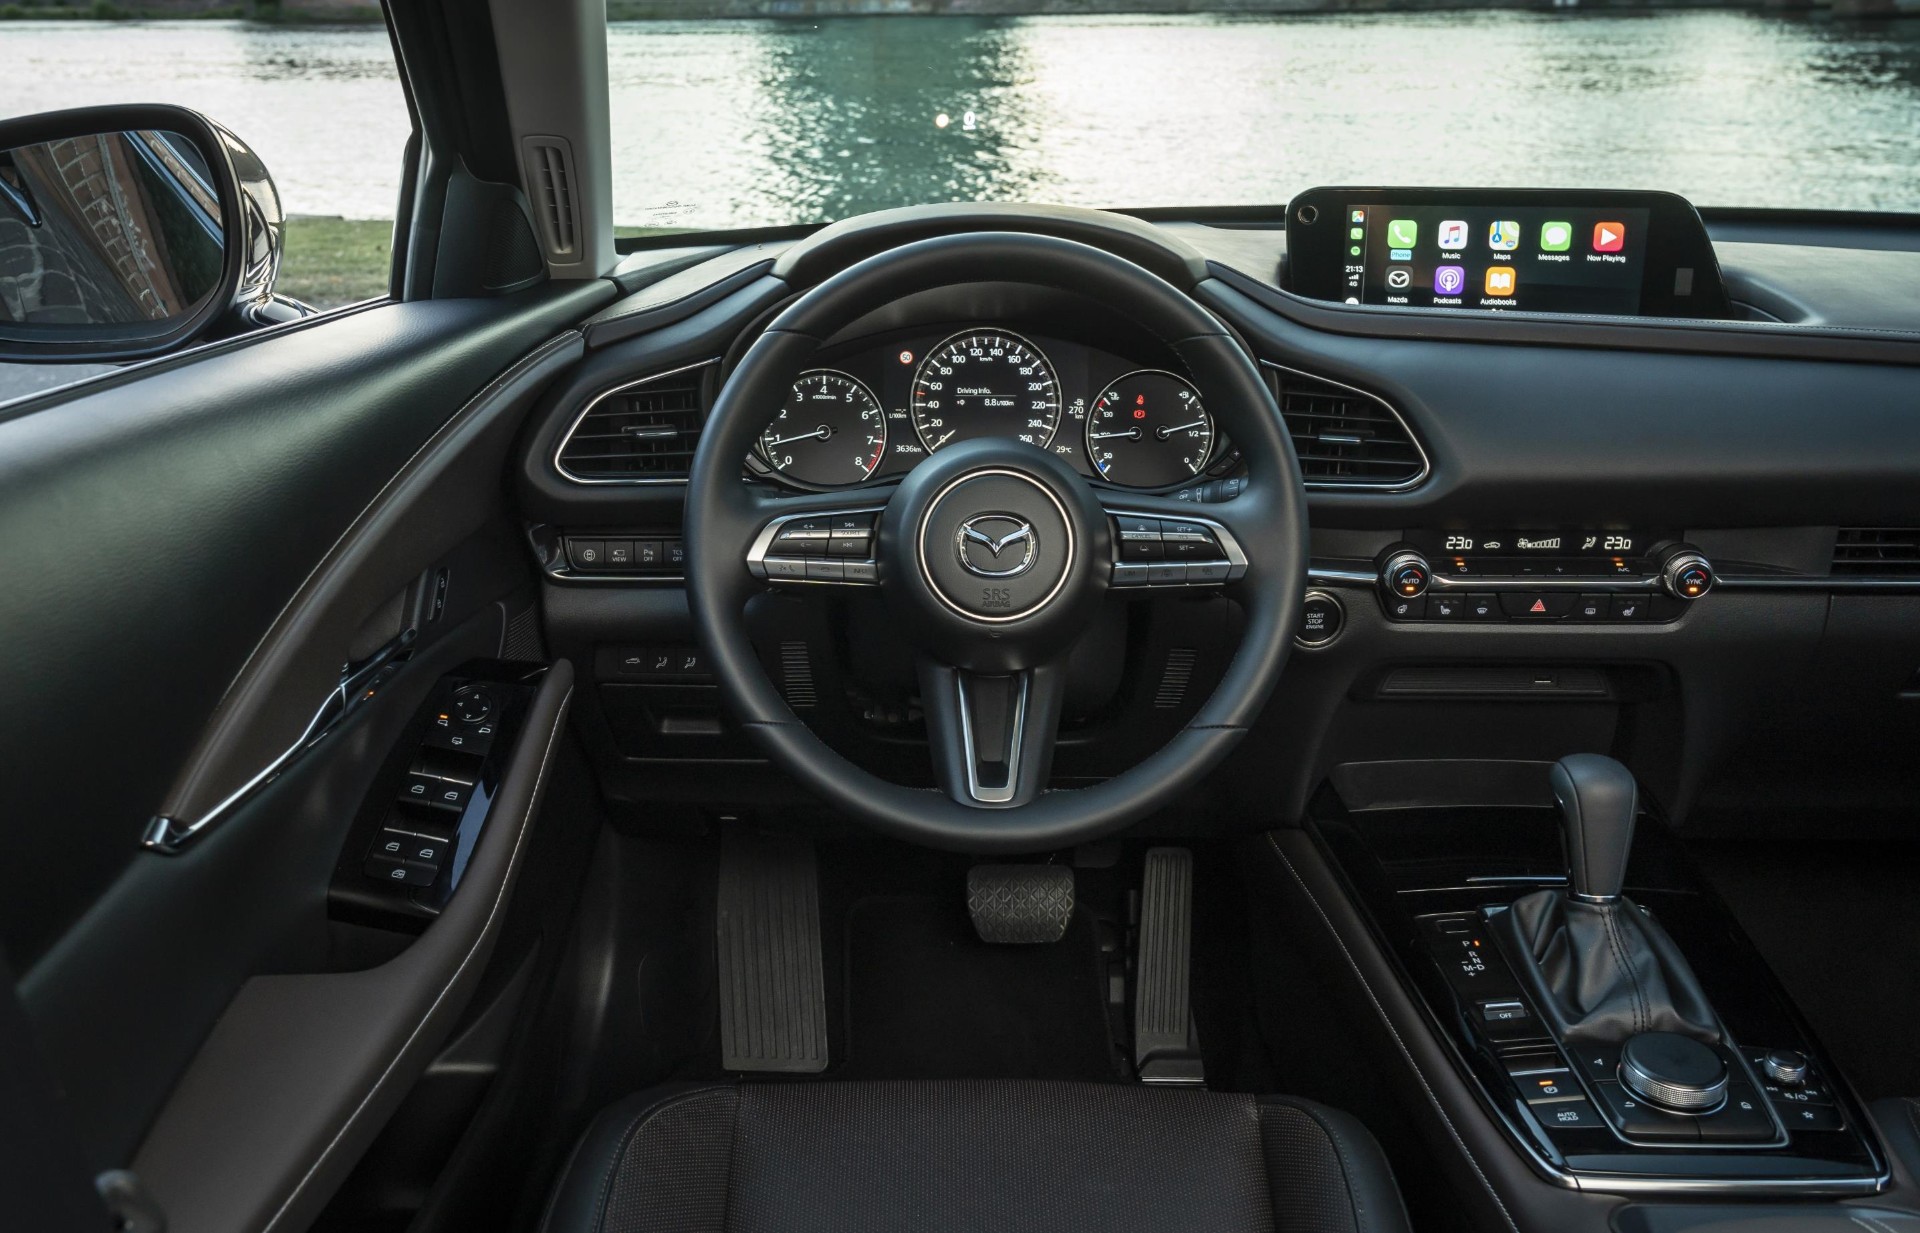 Mazda CX-30 interior.jpg (409 KB)